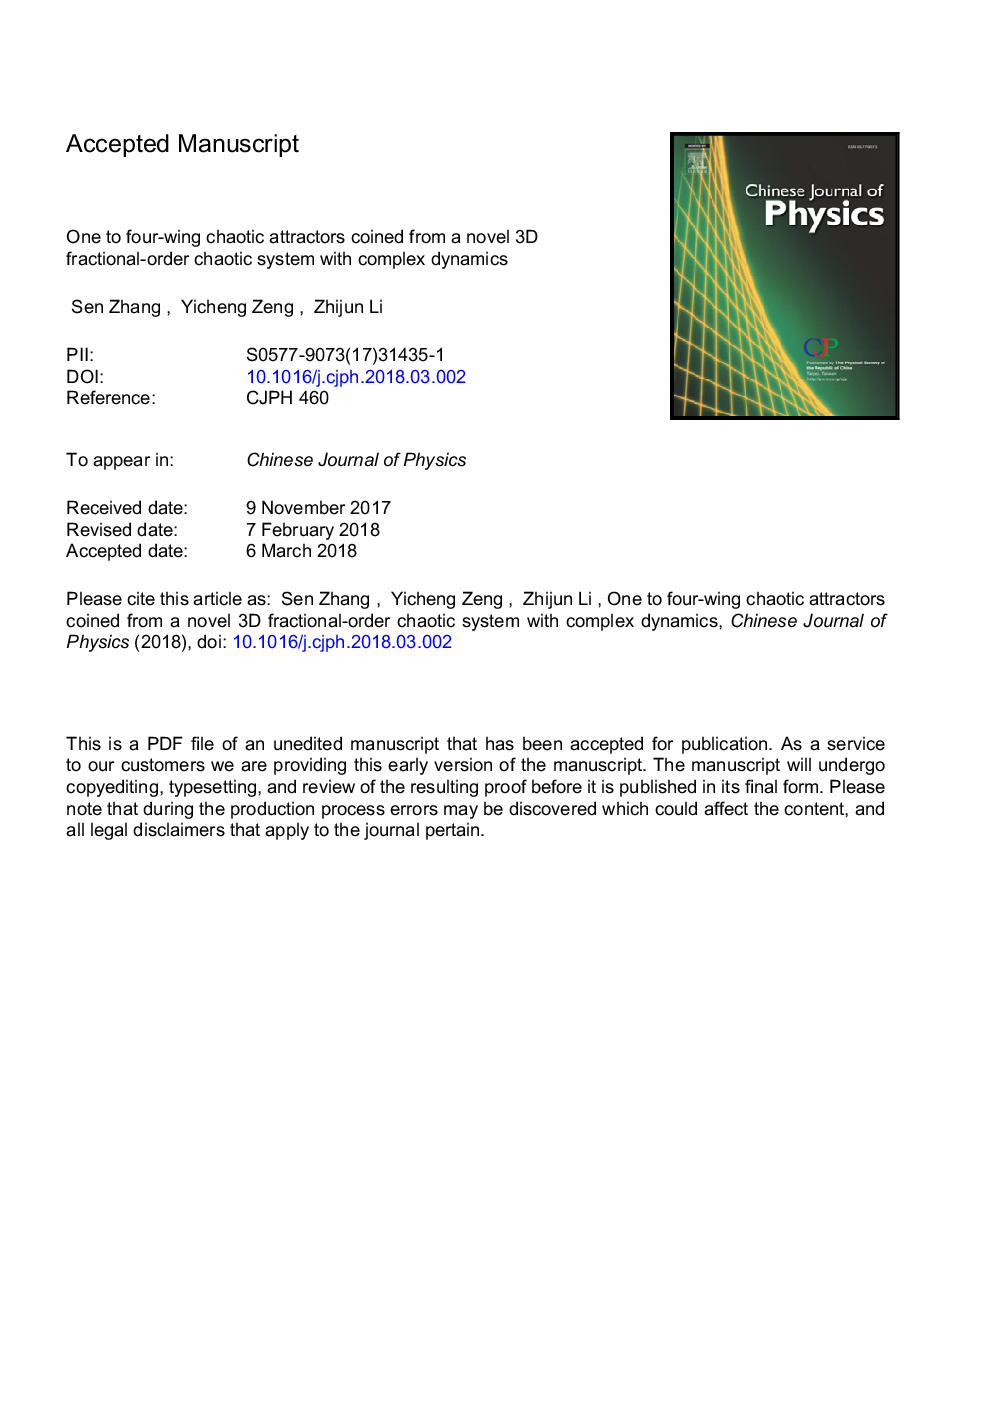 یکی از جذابیت های هرج و مرج یک یا چهاربرگردان از یک سیستم سه بعدی سه بعدی ریاضی سه بعدی با دینامیک پیچیده ای تشکیل شده است 